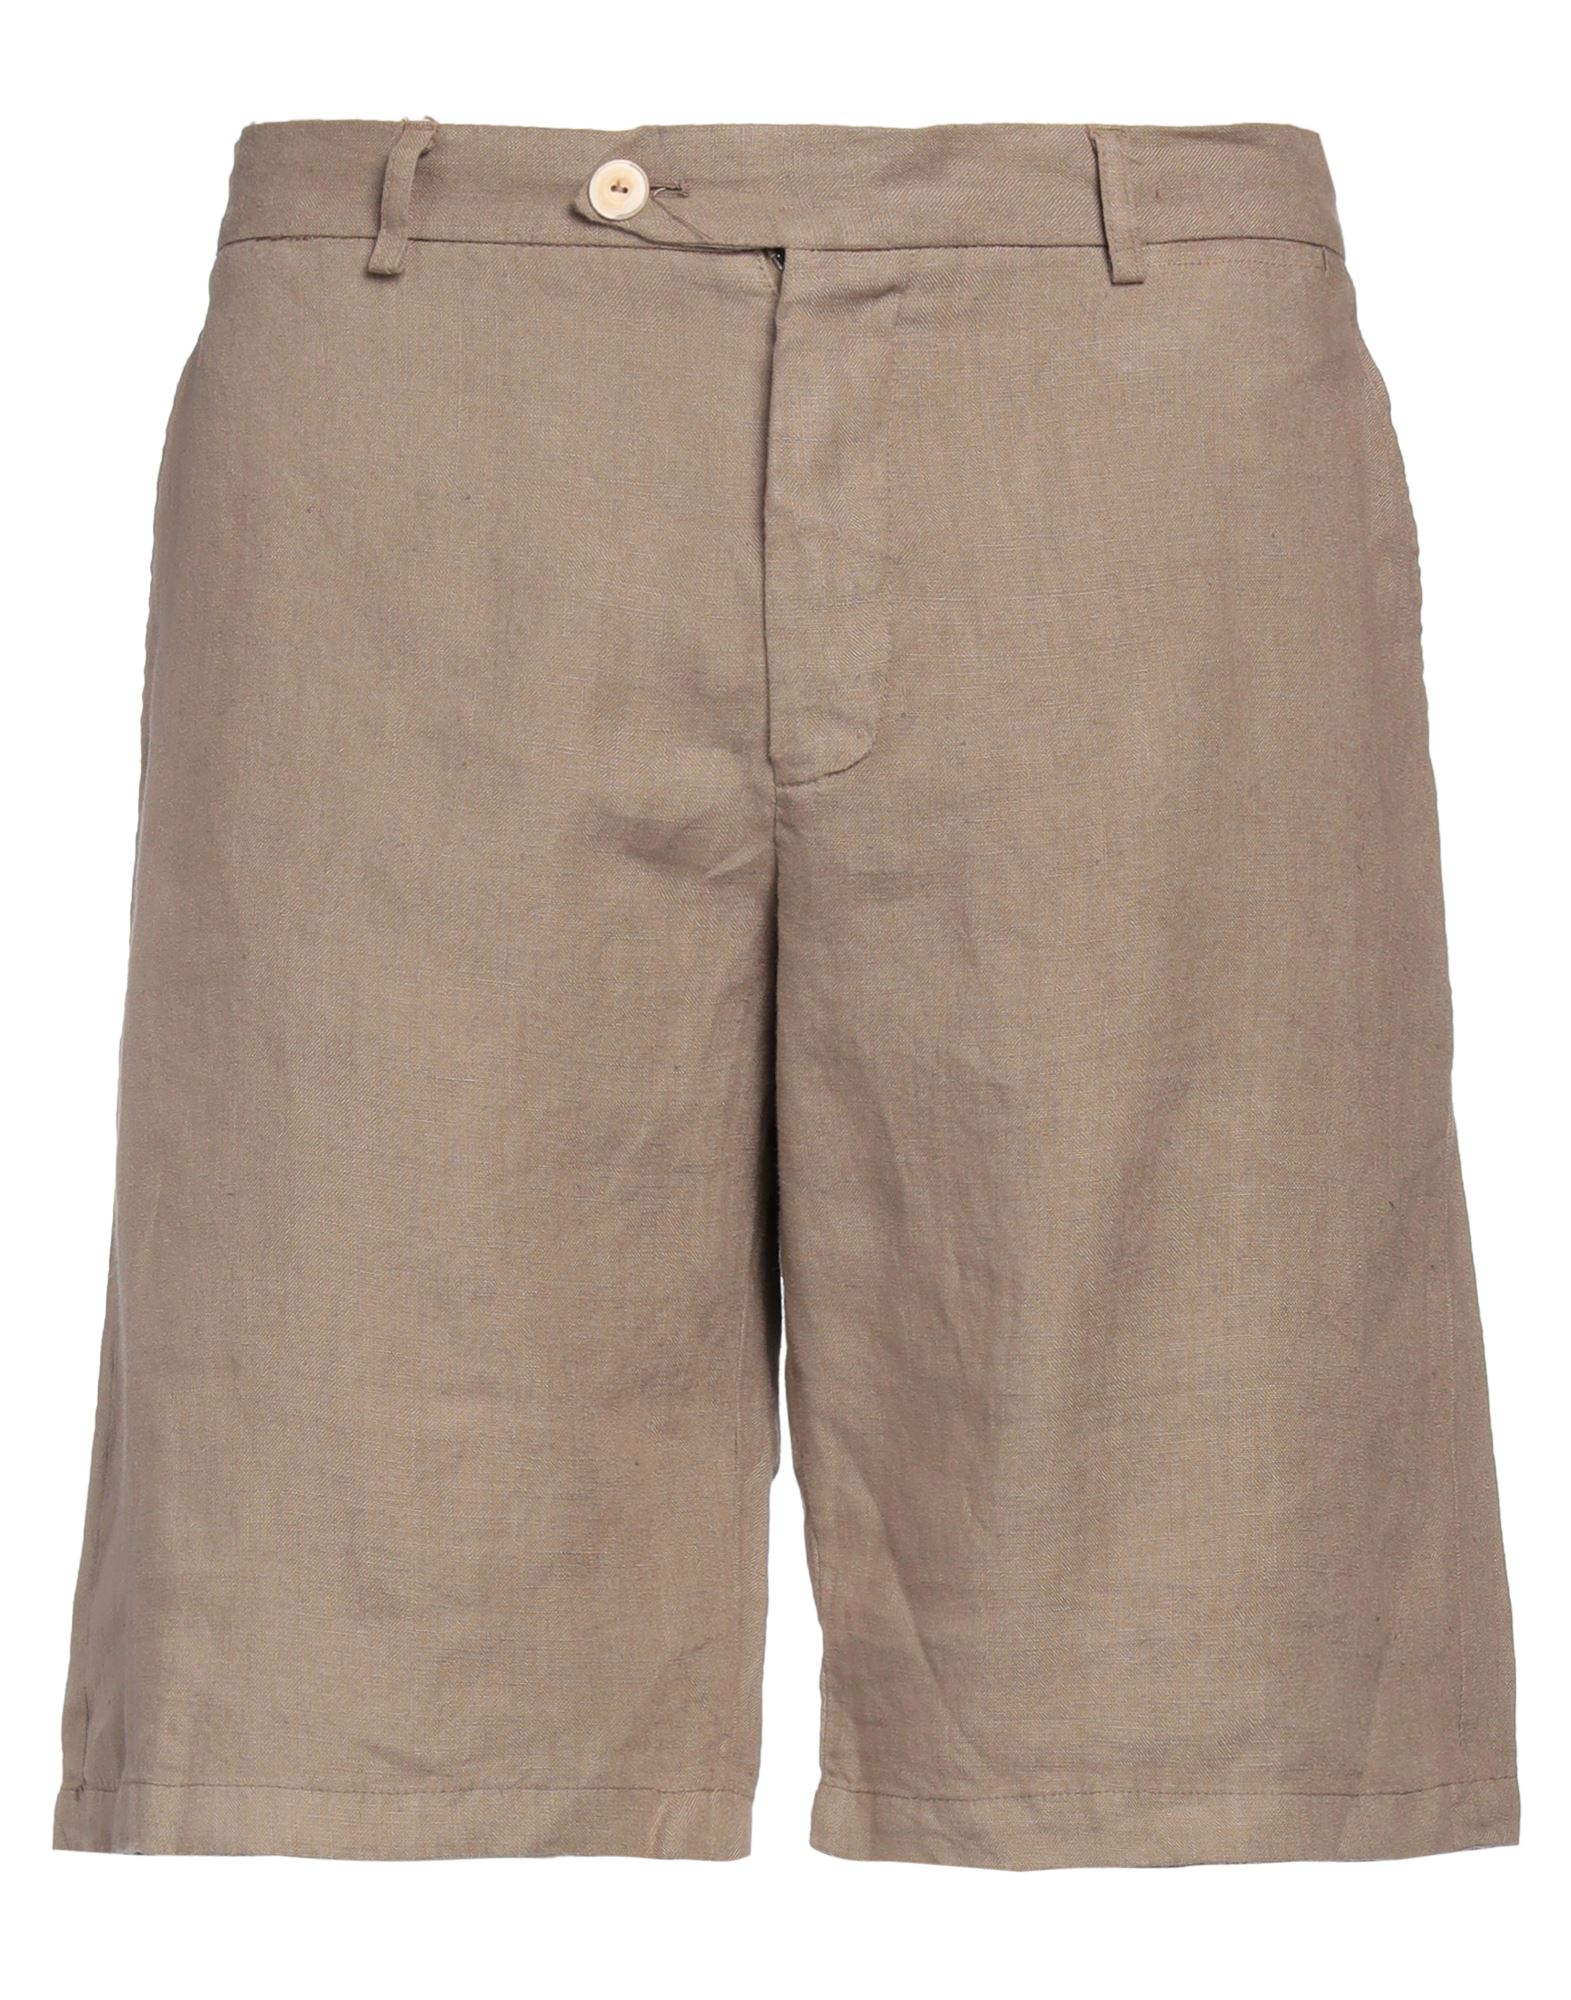 Drumohr Man Shorts & Bermuda Shorts Light Brown Size Xl Linen In Beige